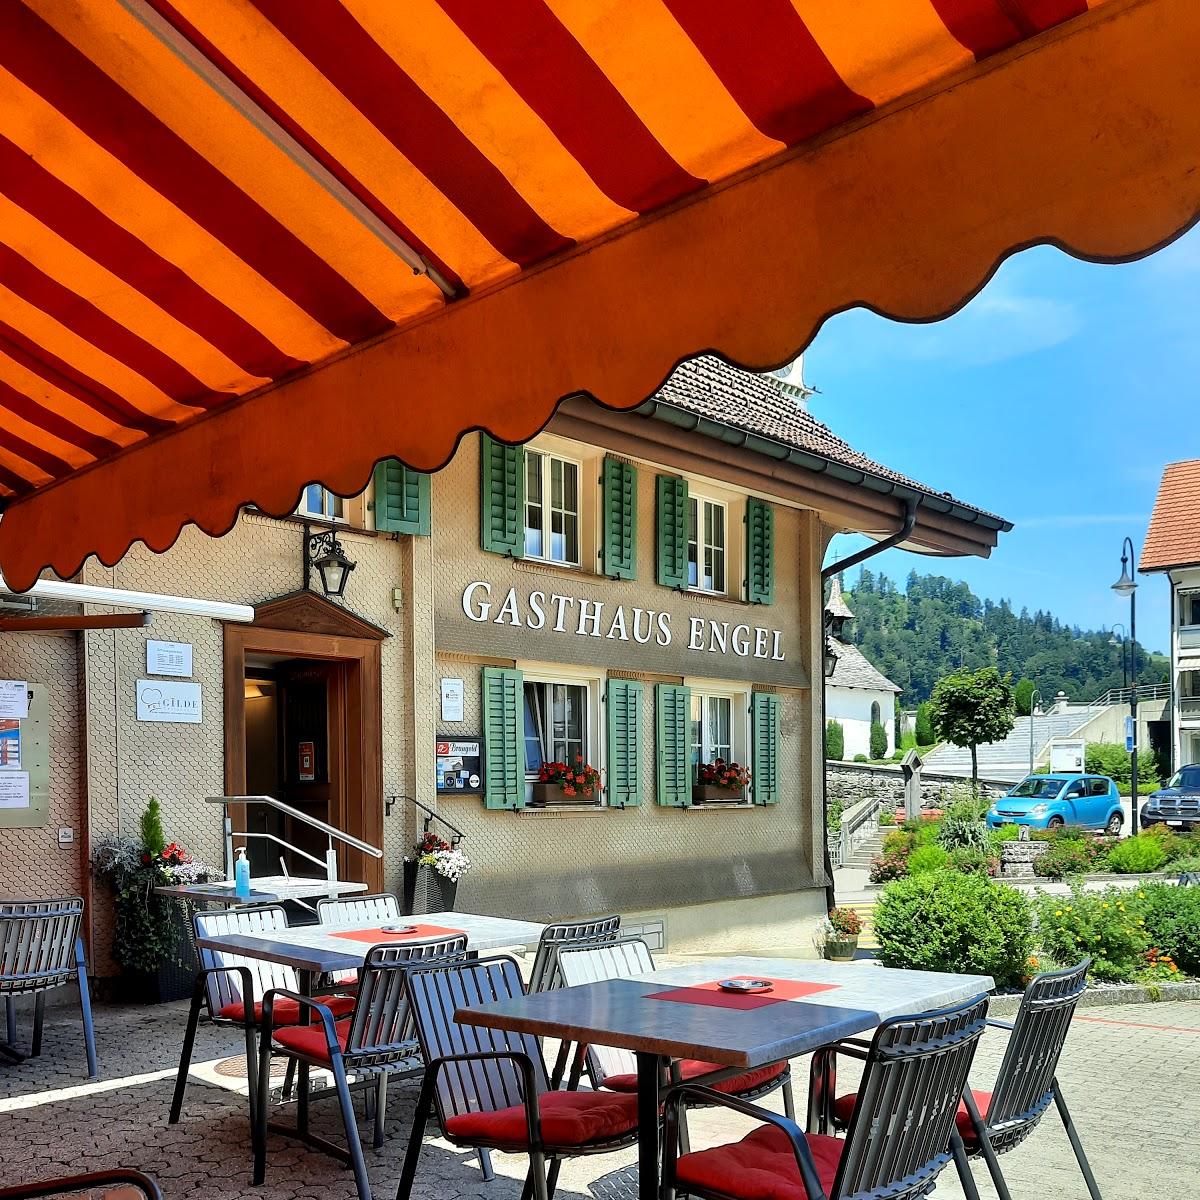 Restaurant "Gasthaus Engel" in Hasle